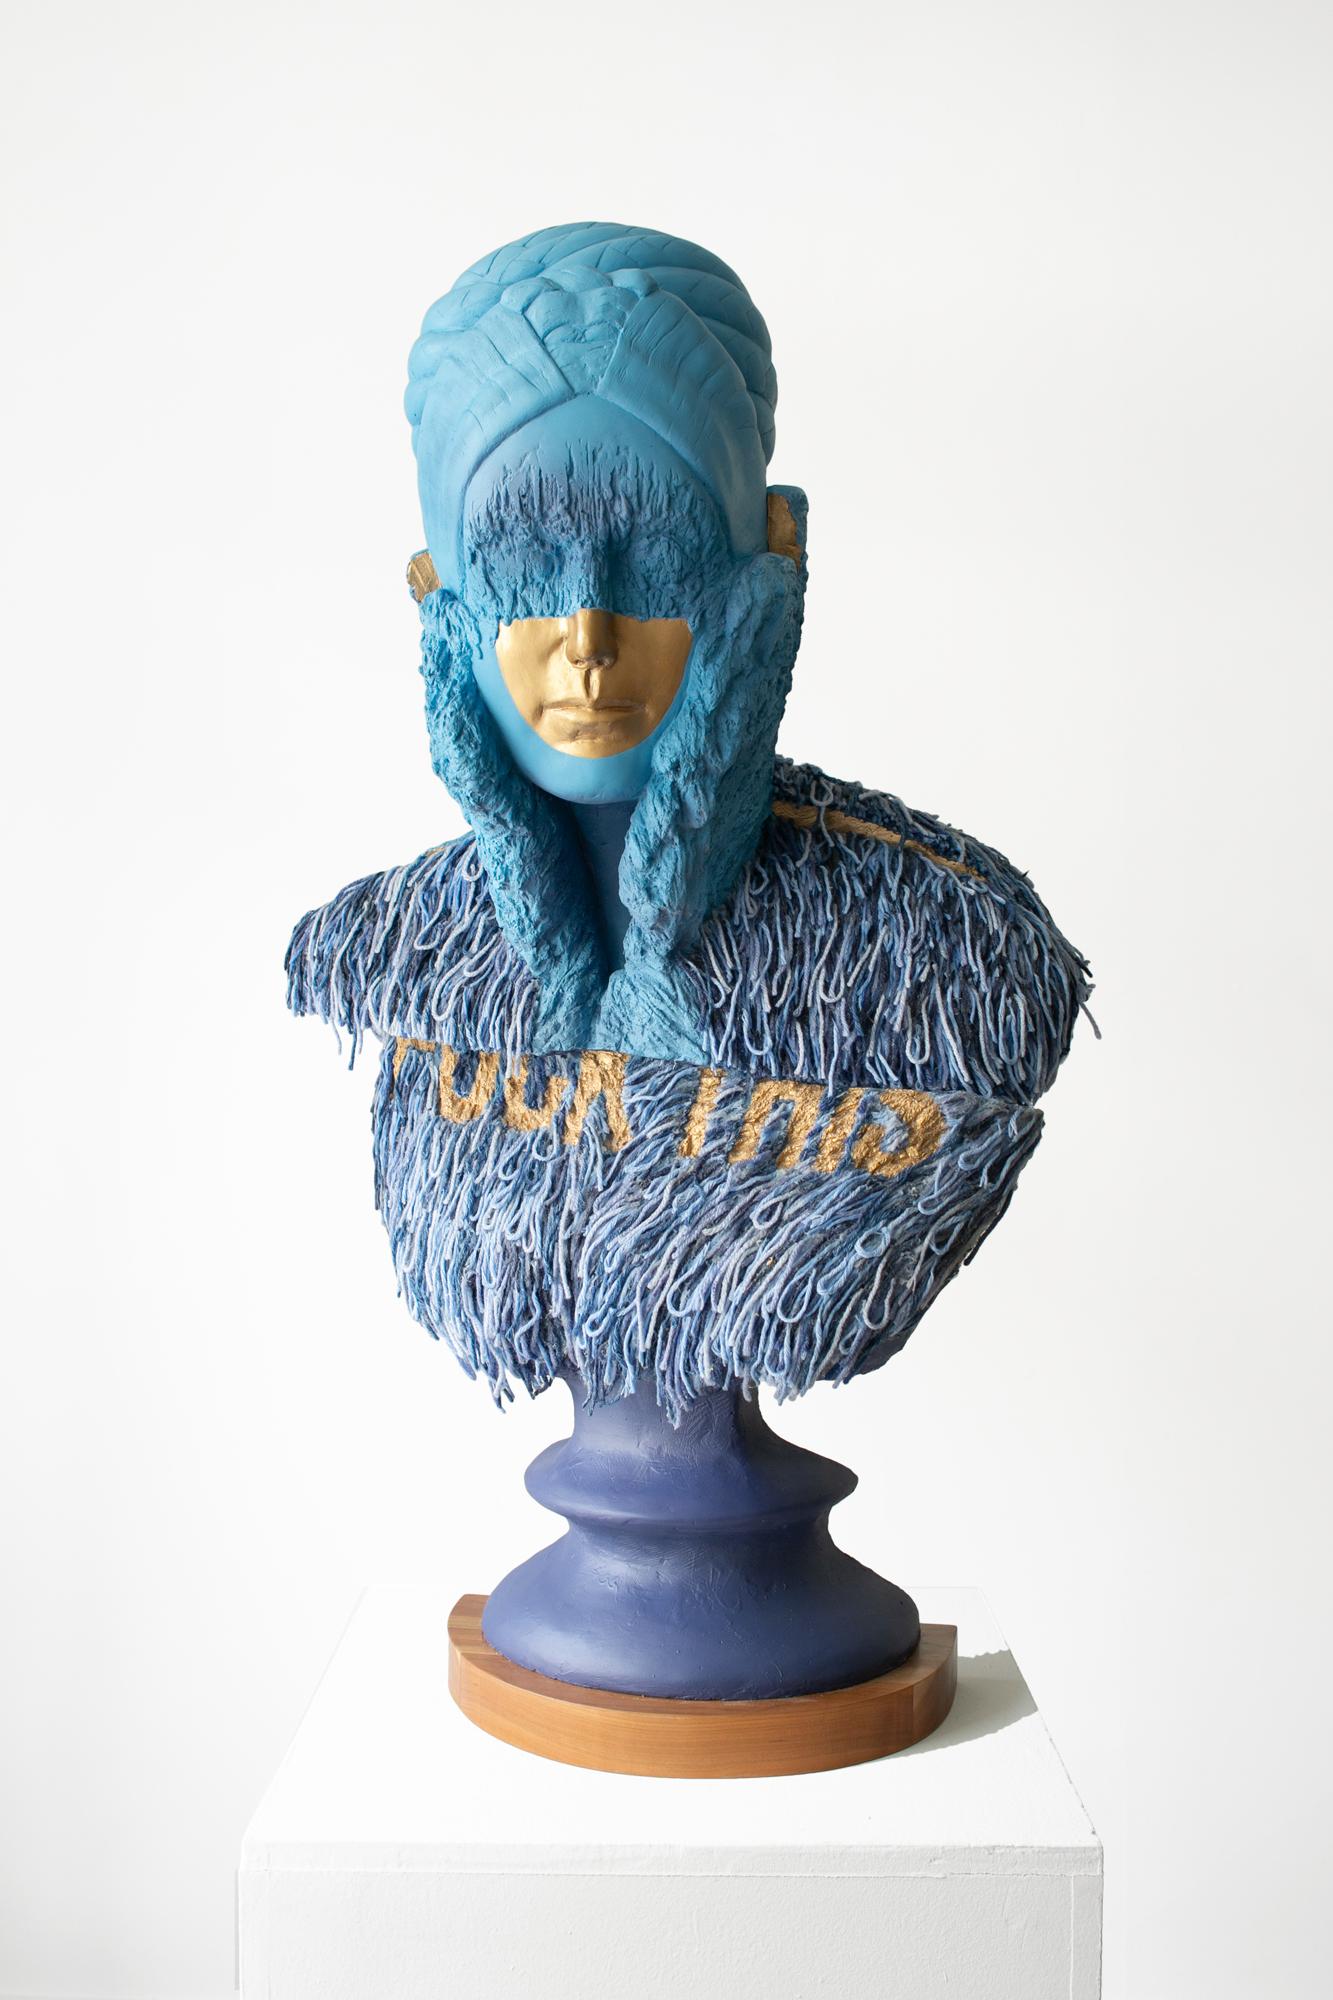 Jedediah Morfit Abstract Sculpture – „Parting Lines“, blau und goldfarbene Metallic-Figurative Büste, Skulptur